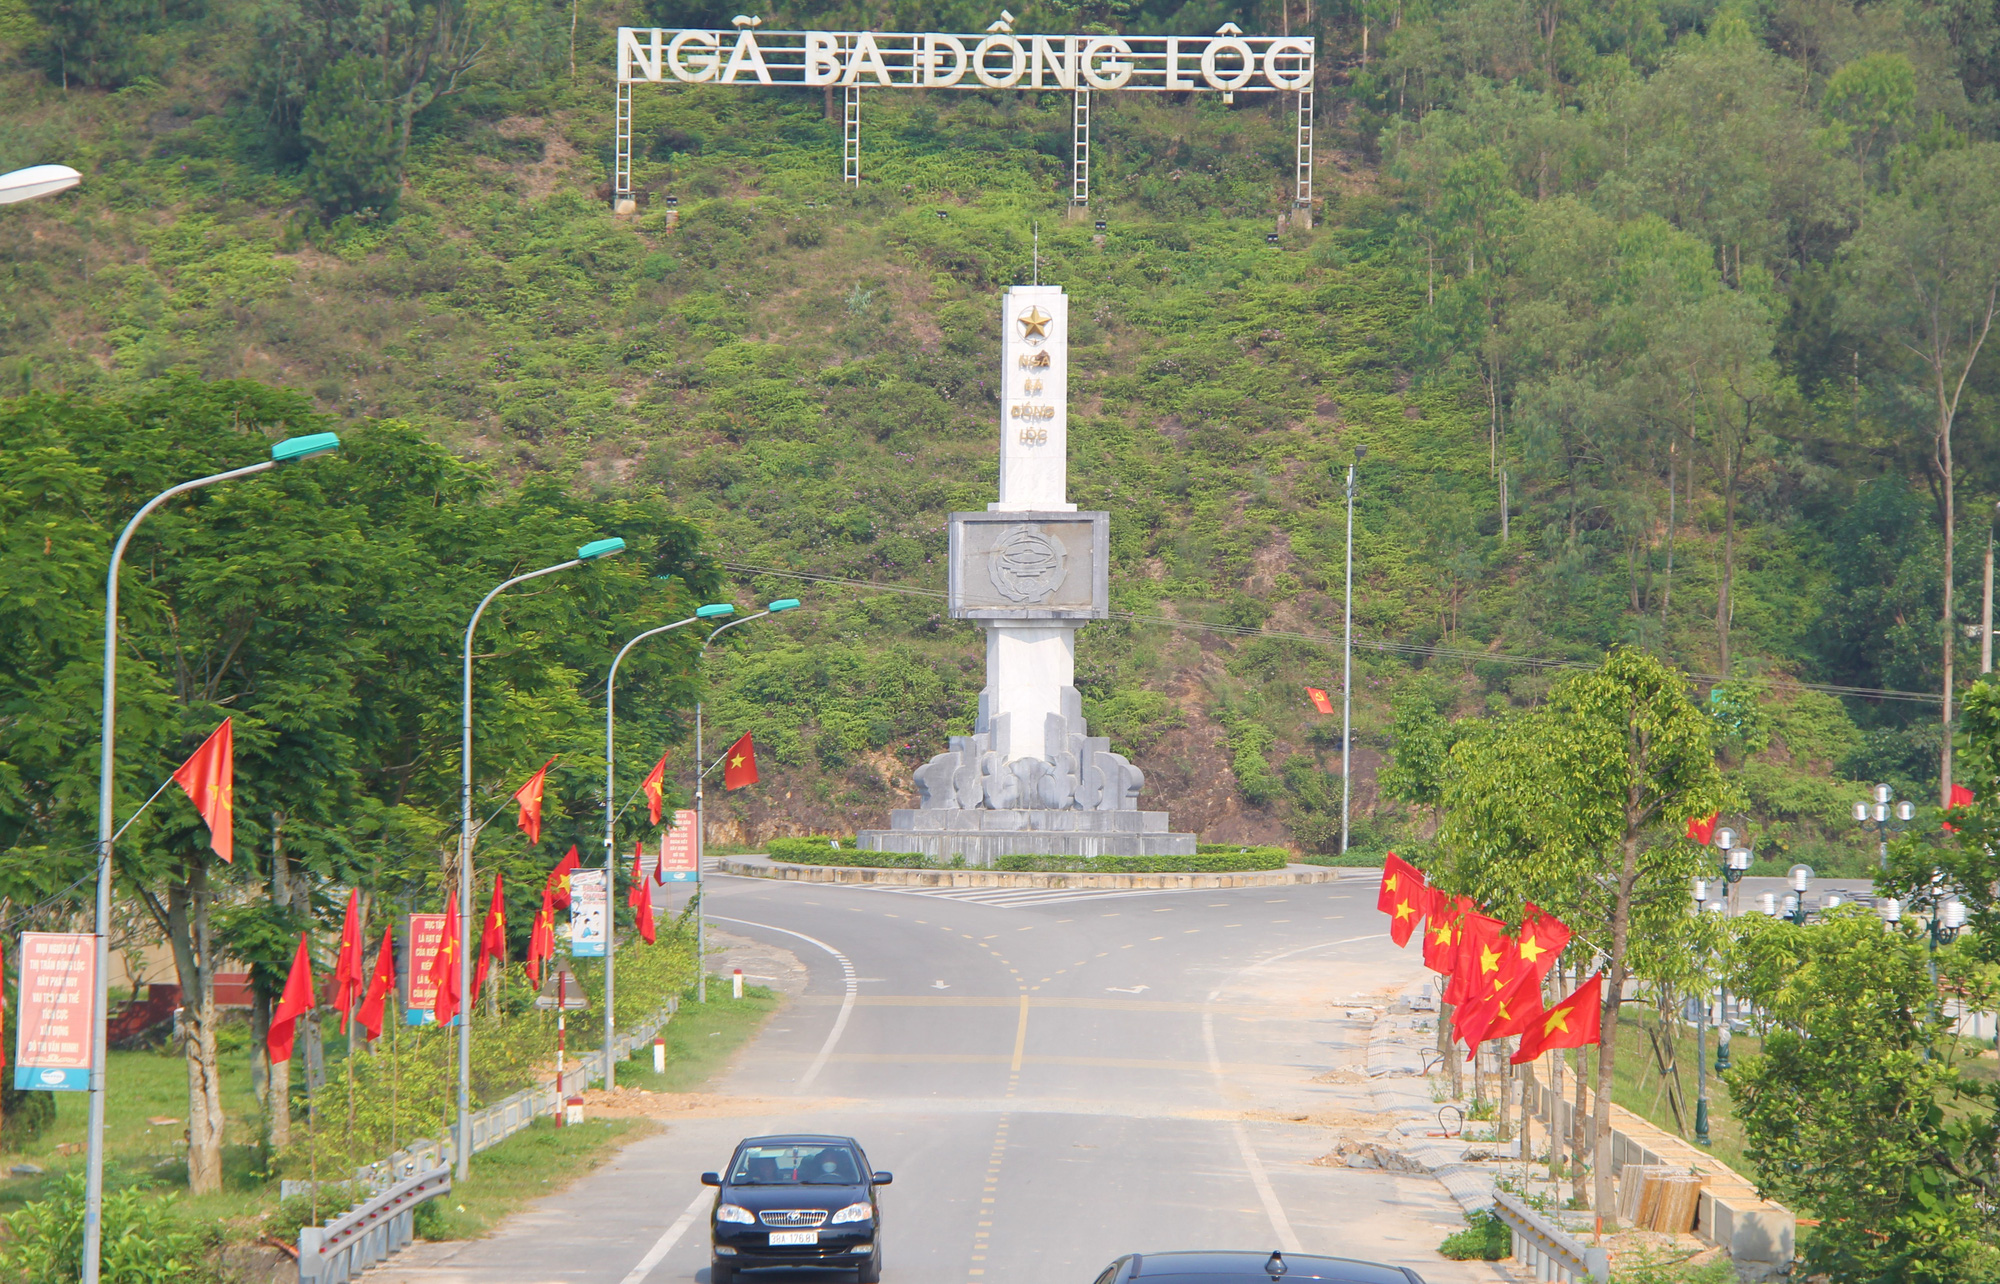 Rợp bóng cờ tại Đường cờ Tổ quốc Khu di tích Ngã ba Đồng Lộc - Ảnh 3.